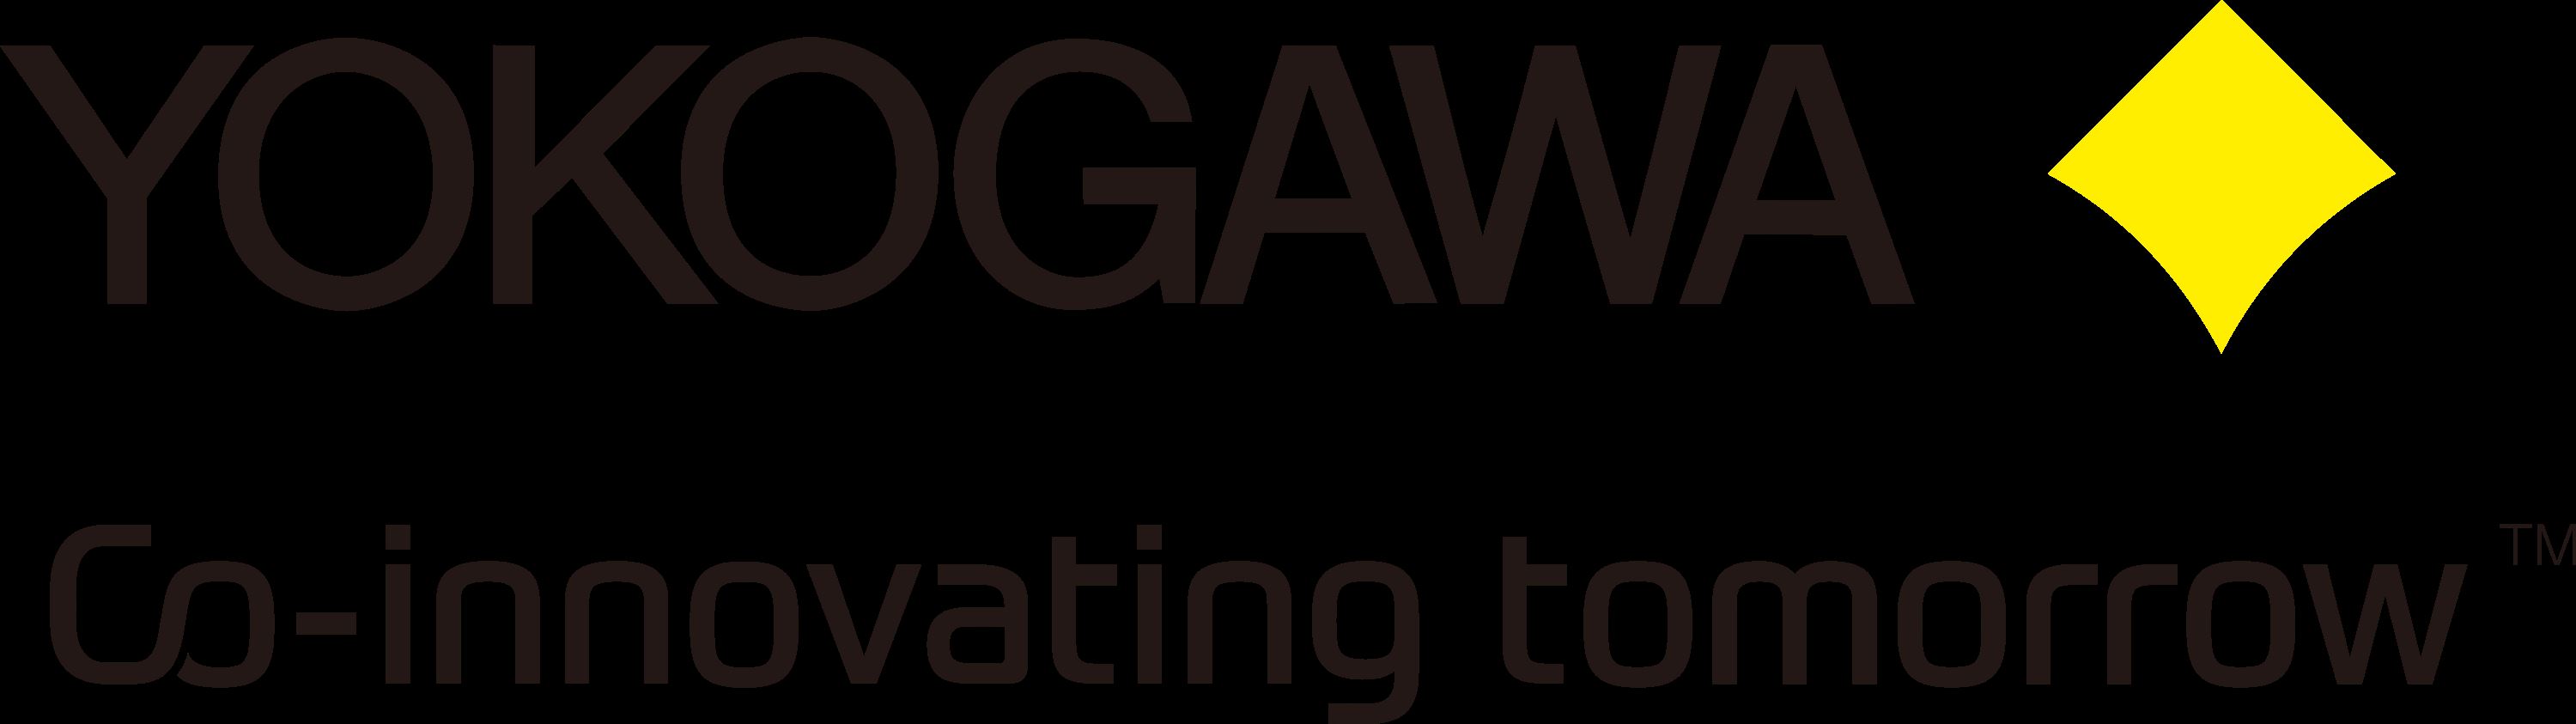 logo yokogawa